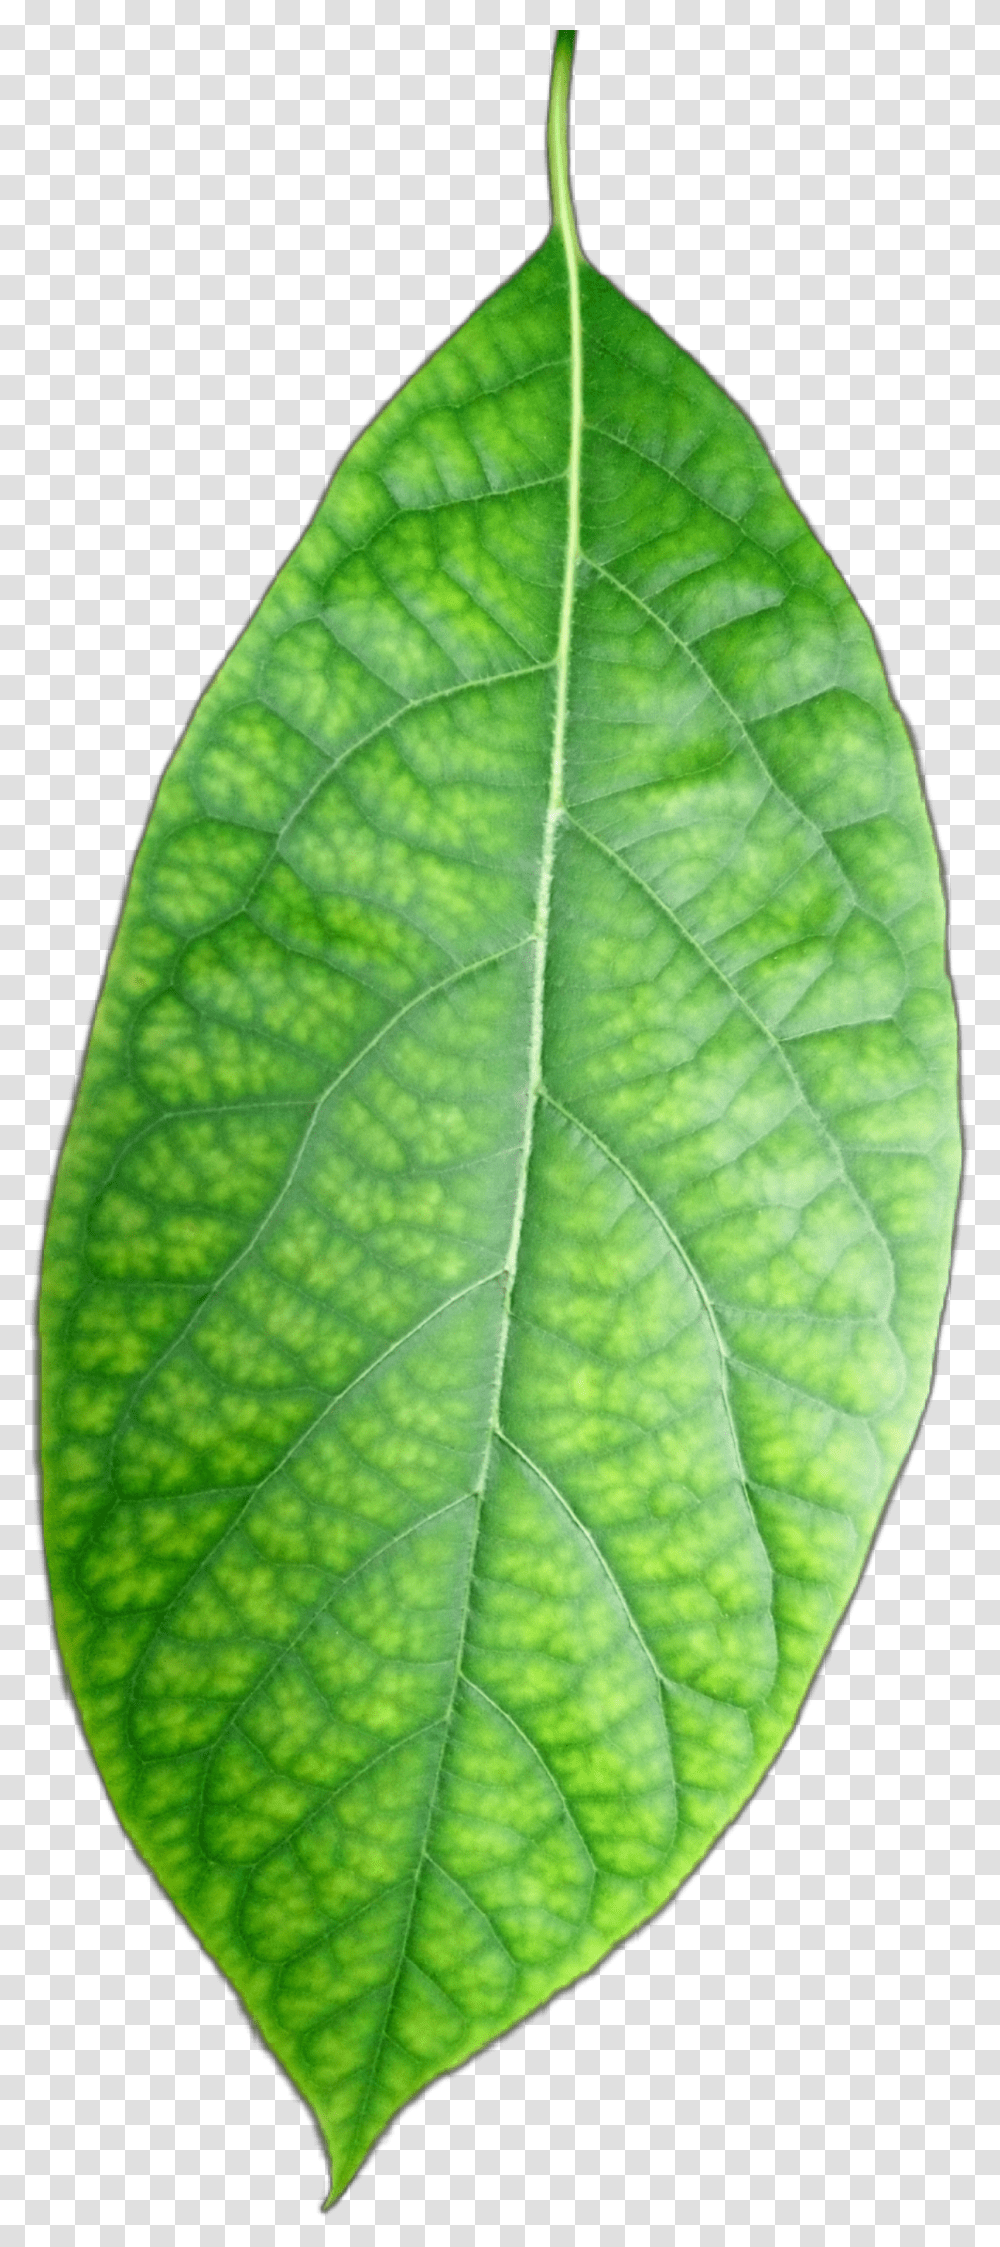 Freetoedit Hoja Verde Leave Green Plants Palto Bud, Veins, Leaf, Pineapple, Fruit Transparent Png